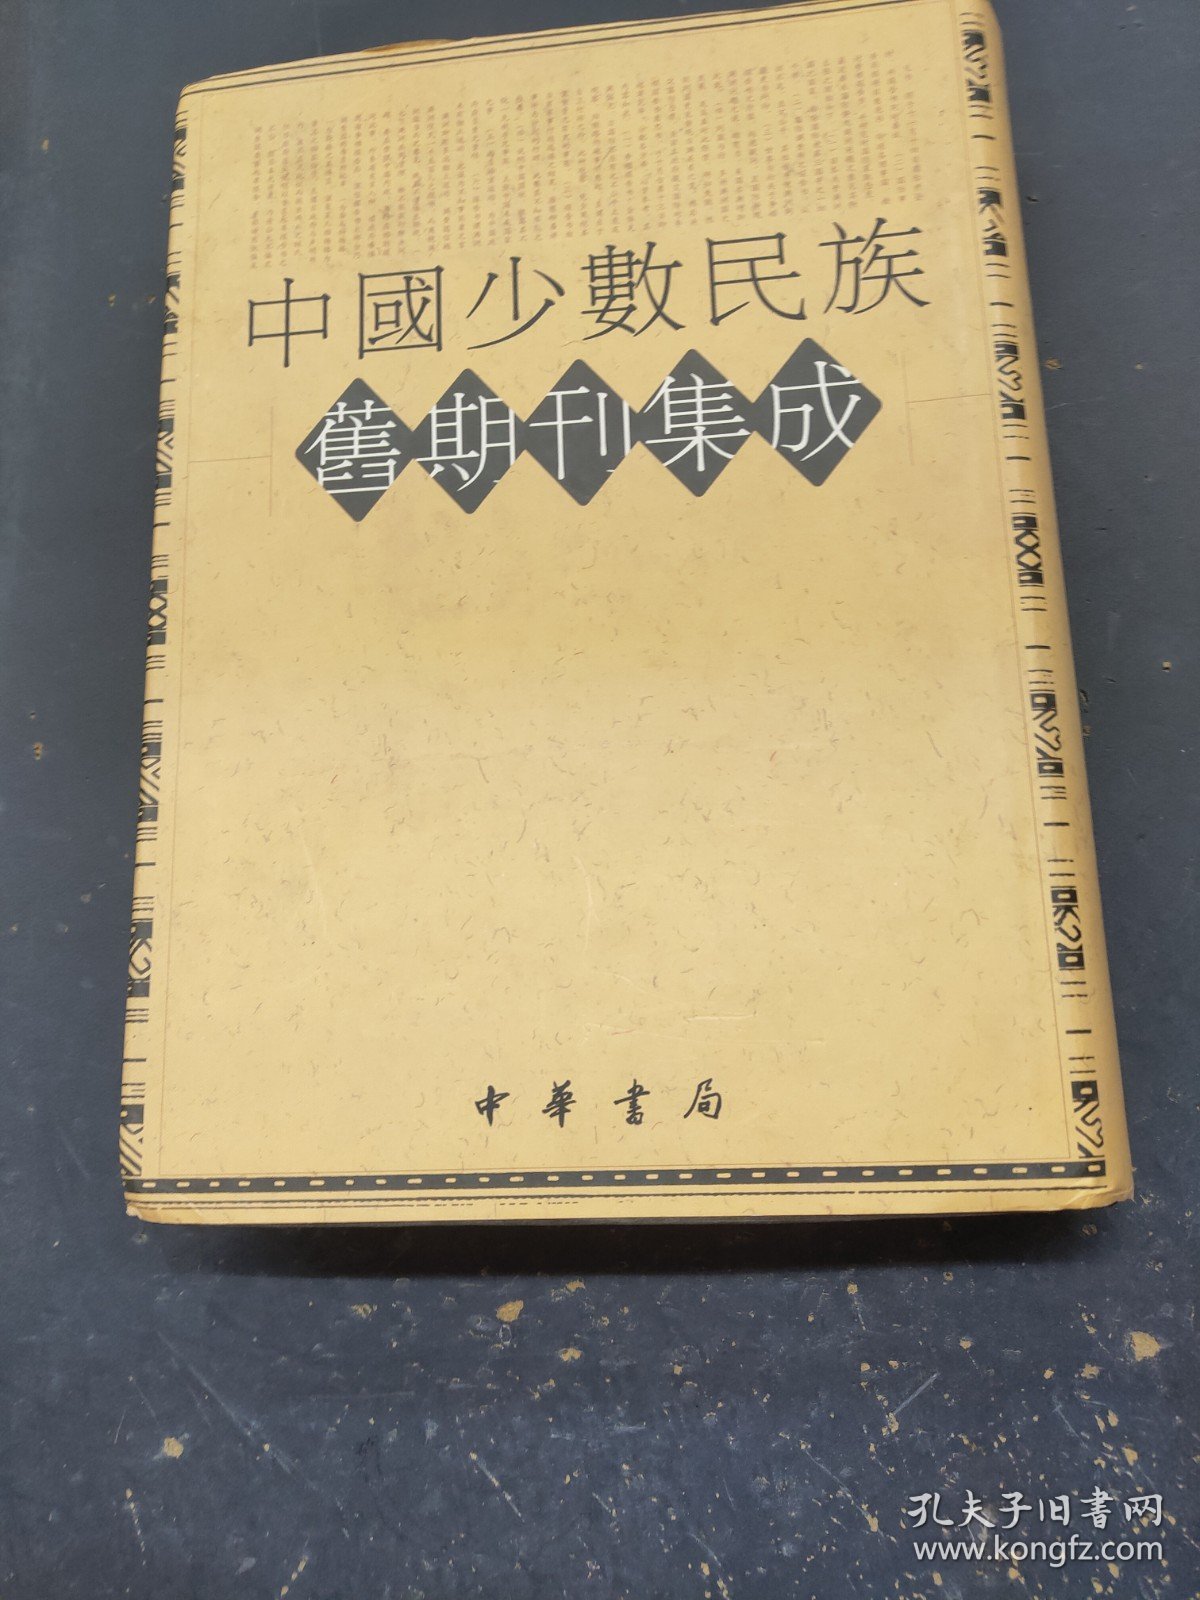 中国少数民族旧期刊集成82